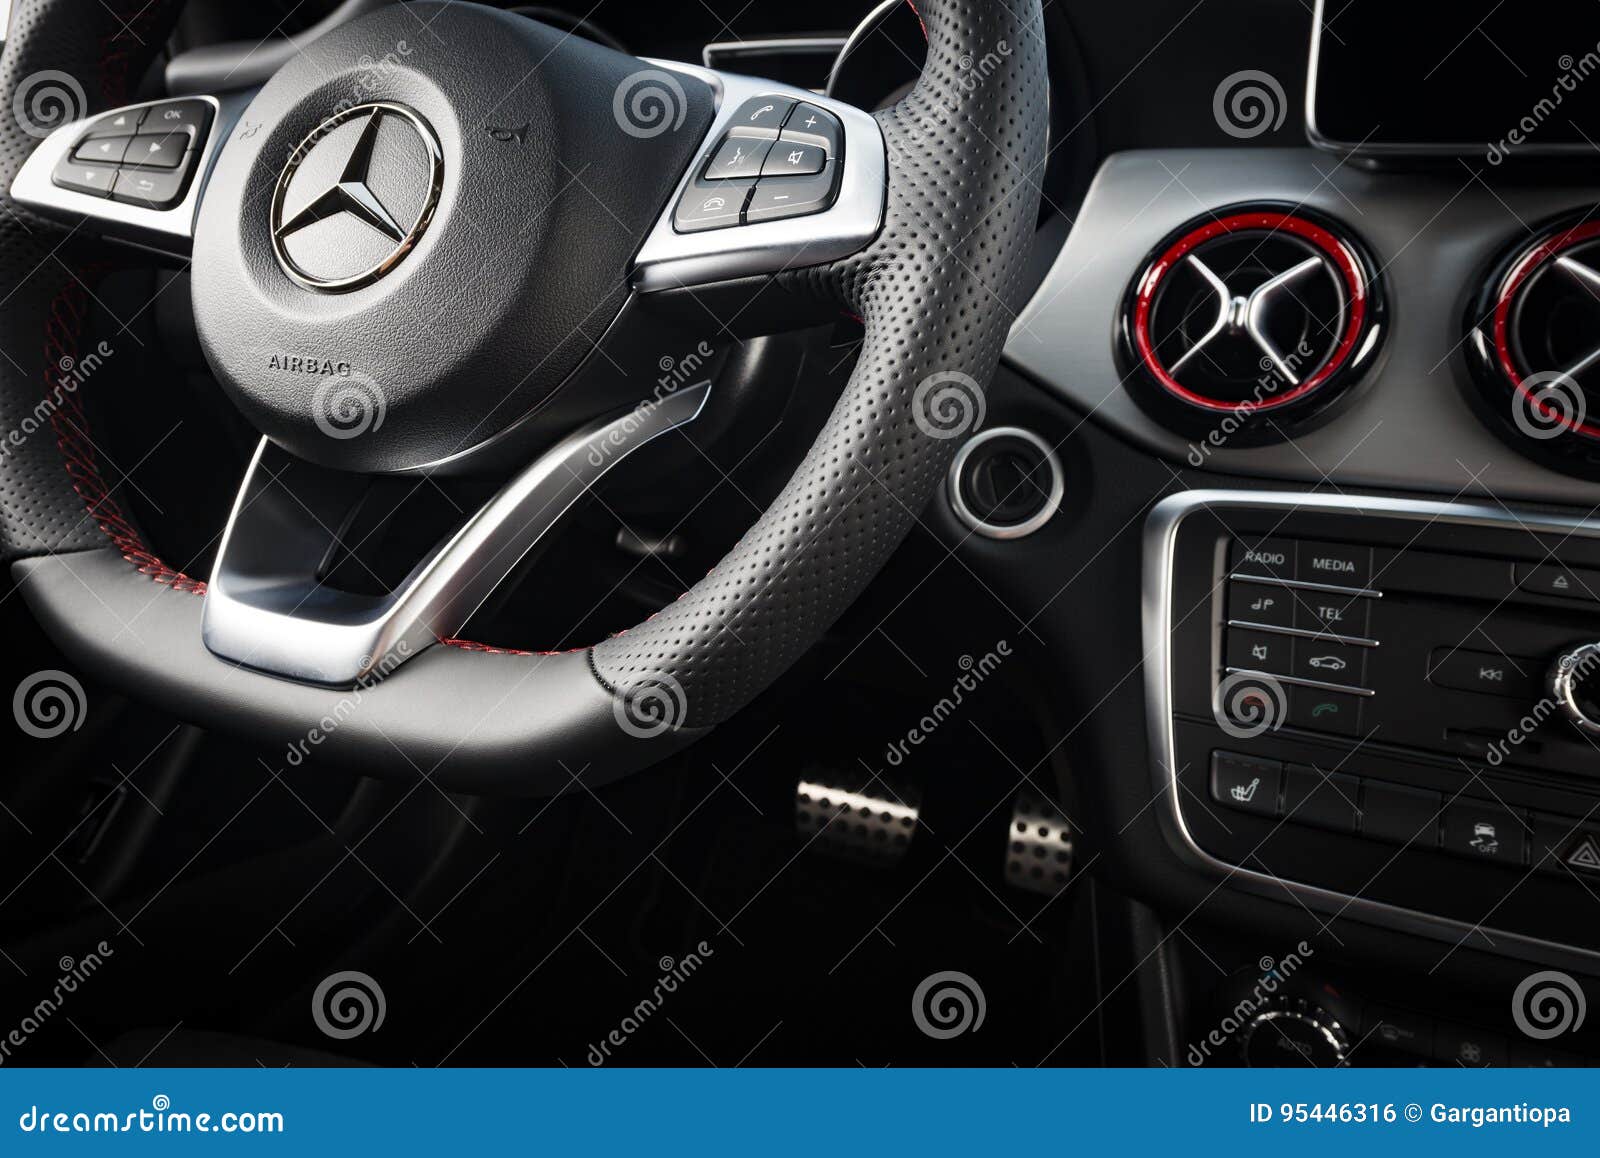 Mercedes Benz Cla 45 2016 Amg Interior Editorial Photo